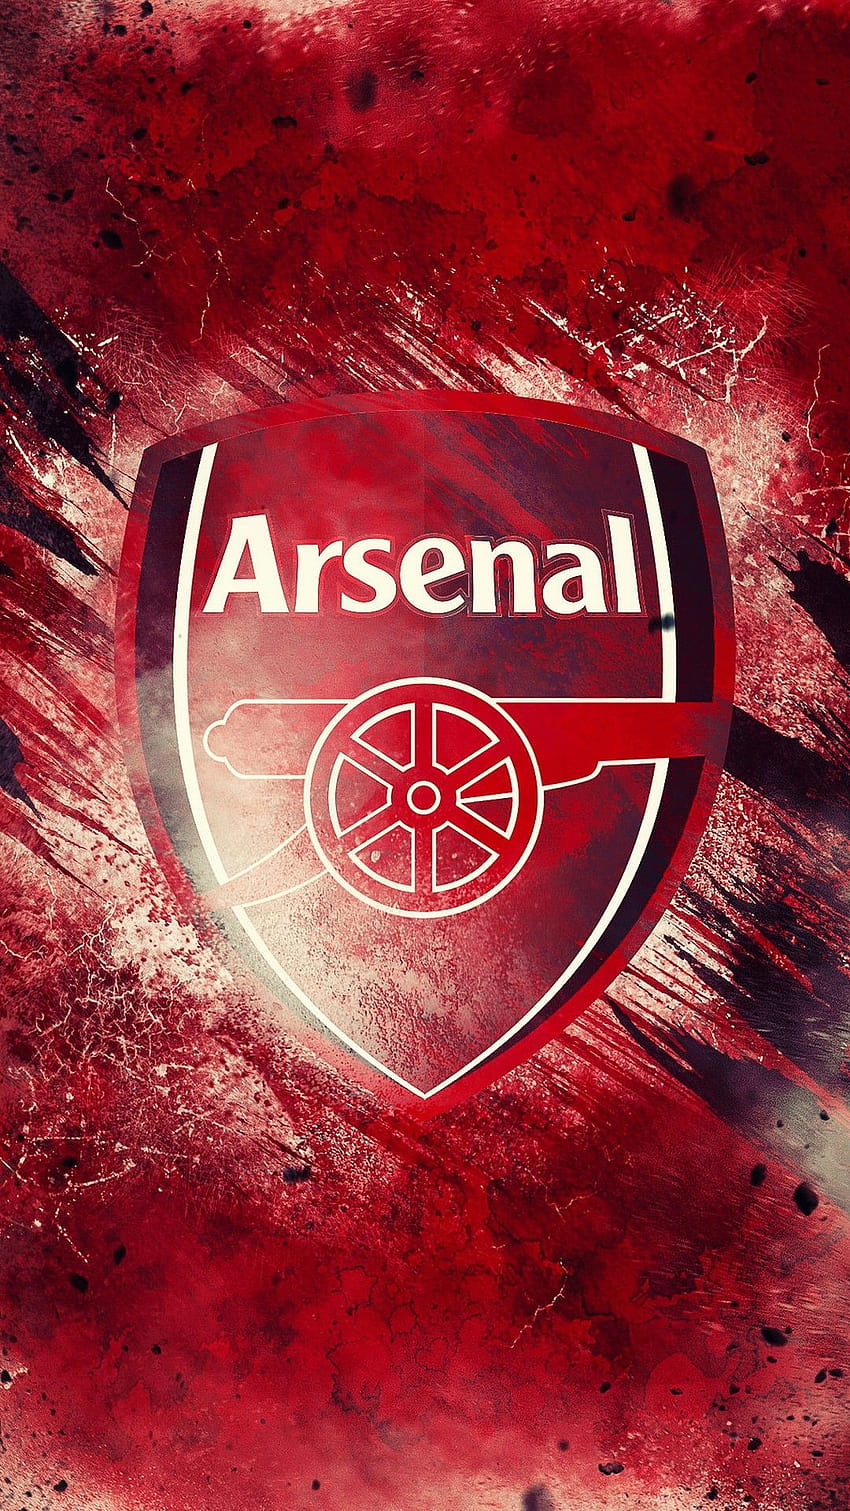 Resolusi Iphone Arsenal, logo arsenal wallpaper ponsel HD